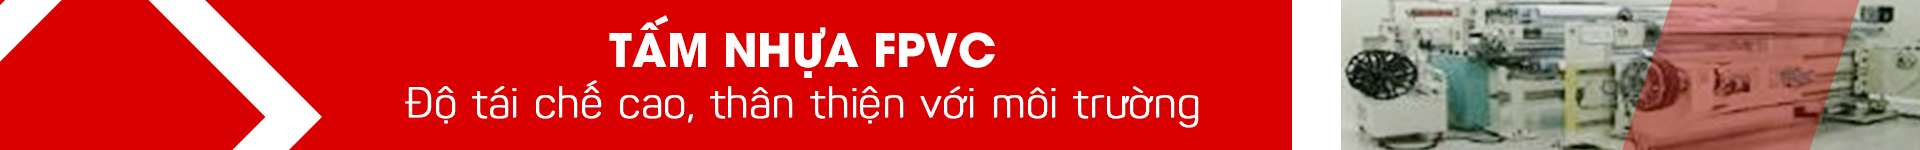 Màng FPVC